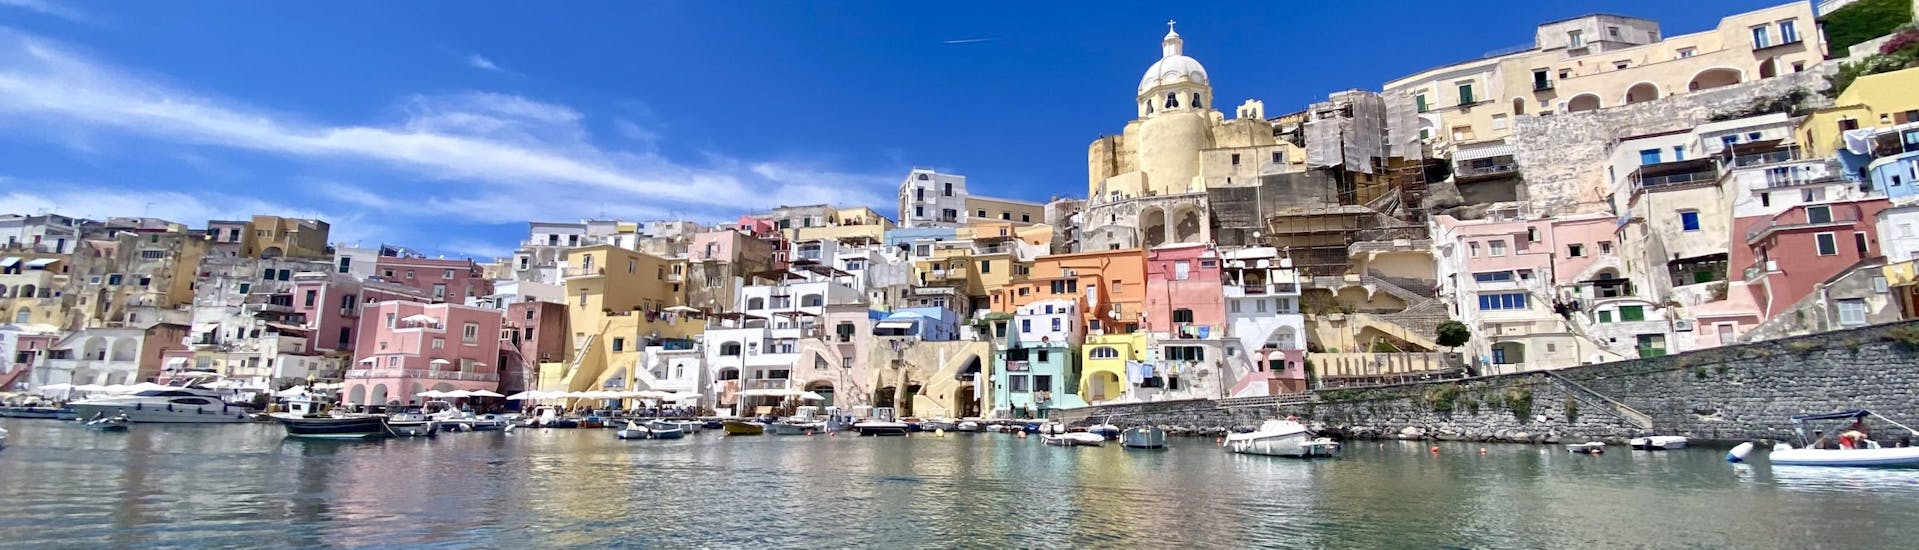 Blick auf das Meer der Bucht von Corricella während der privaten RIB Bootstour von Neapel nach Procida mit Aperitif und Schnorcheln organisiert von Seaside Napoli.